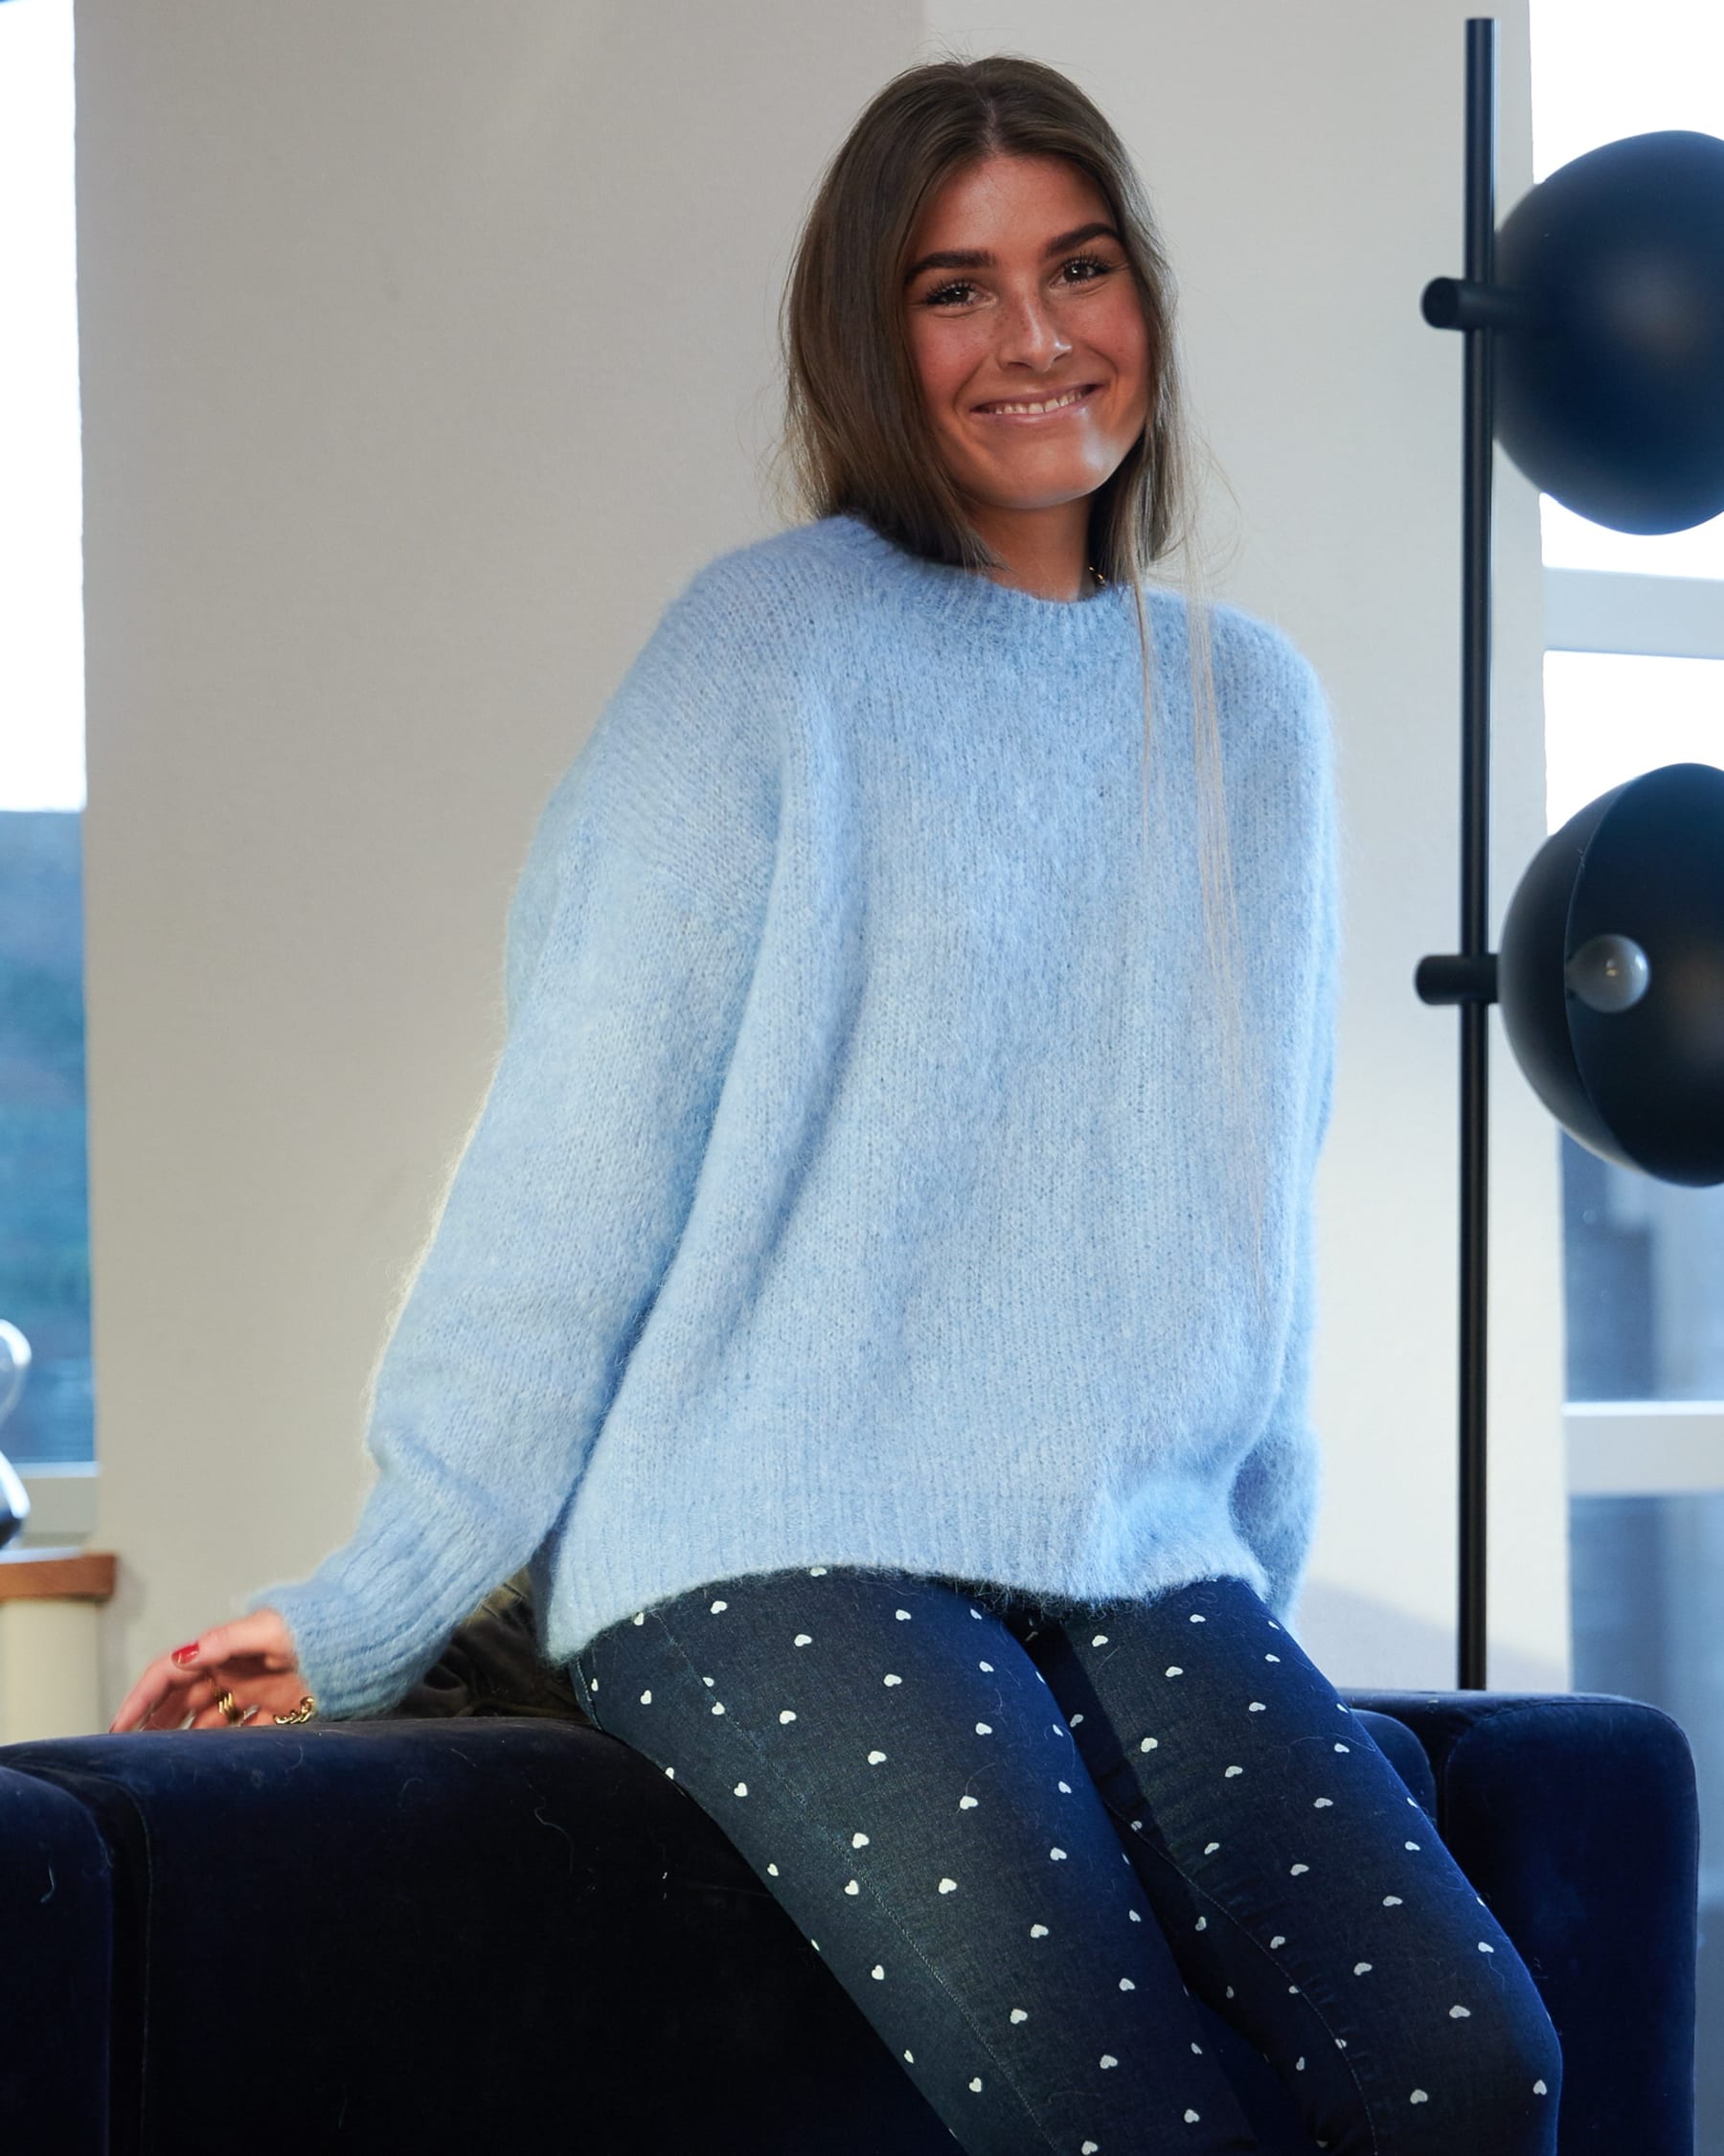 Noella Belinda Sweater Knits Blue